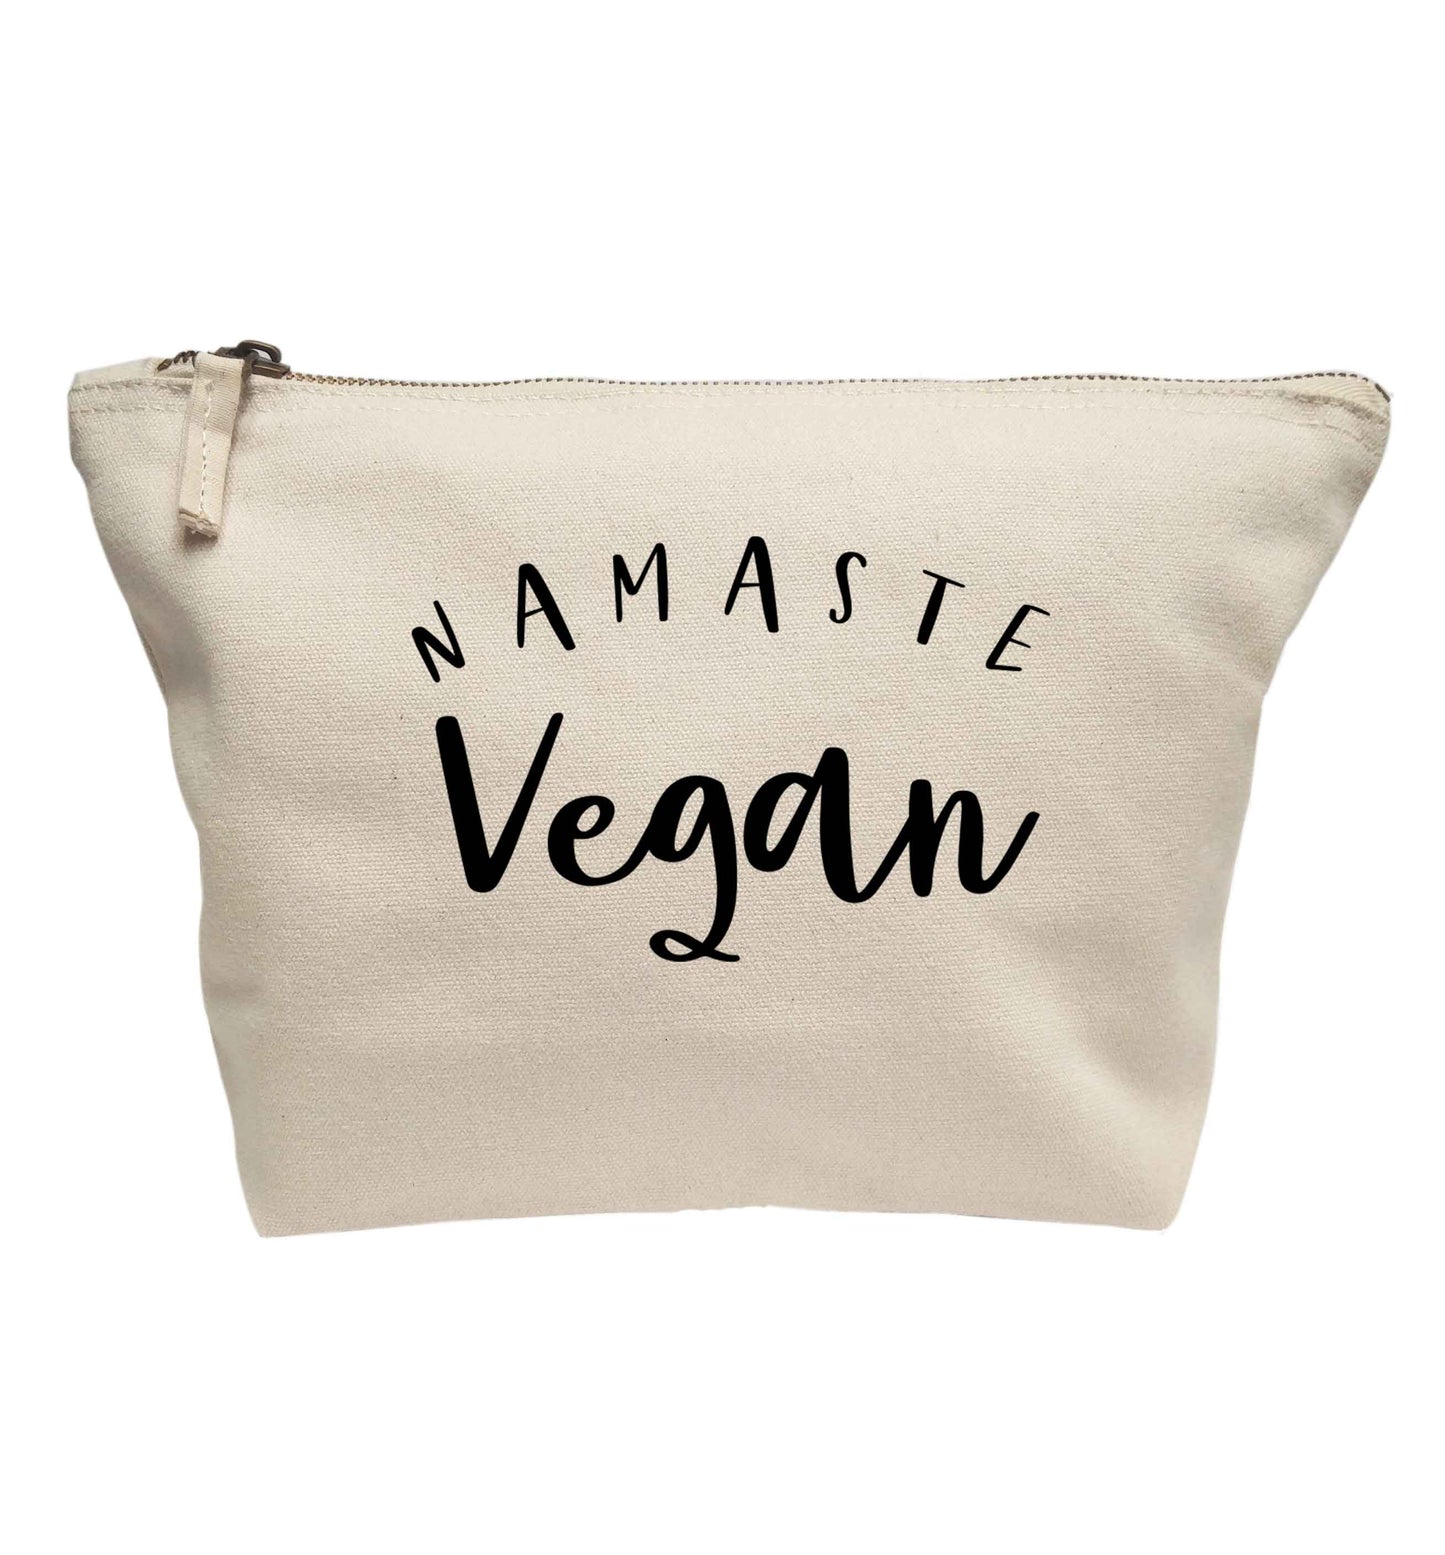 Namaste vegan | makeup / wash bag